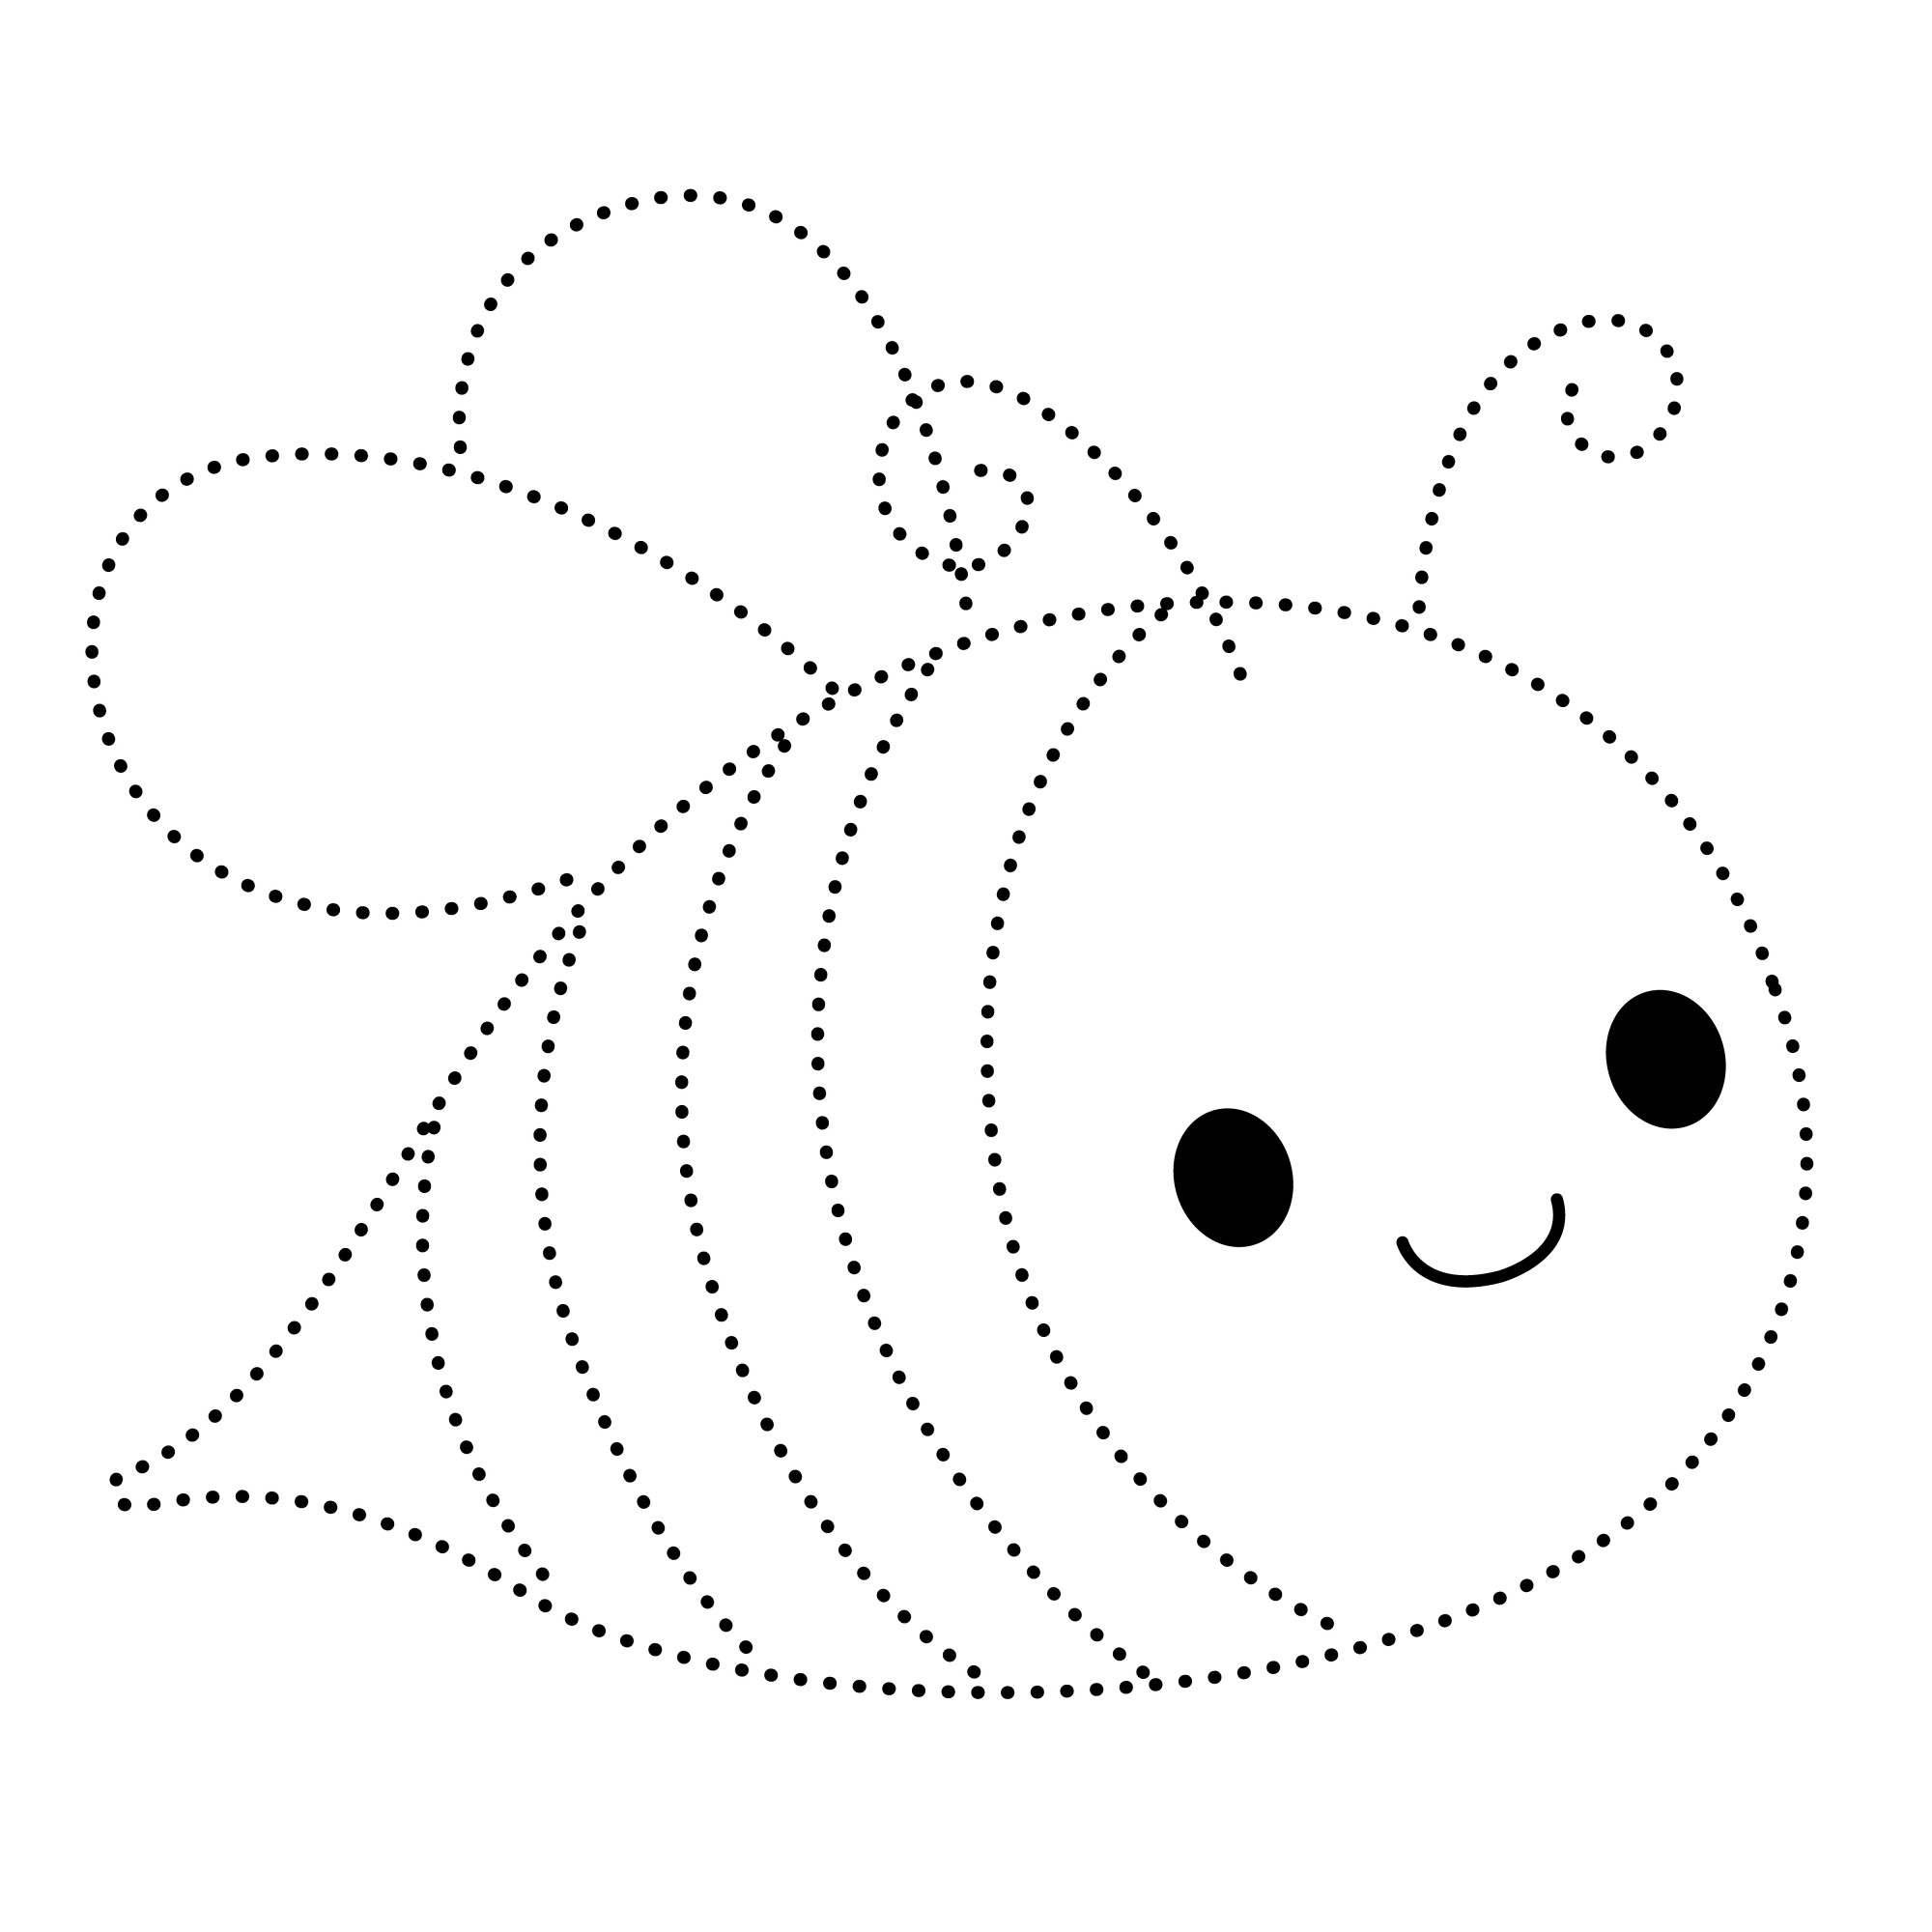 Раскраска для детей: мультяшная пчела по точкам